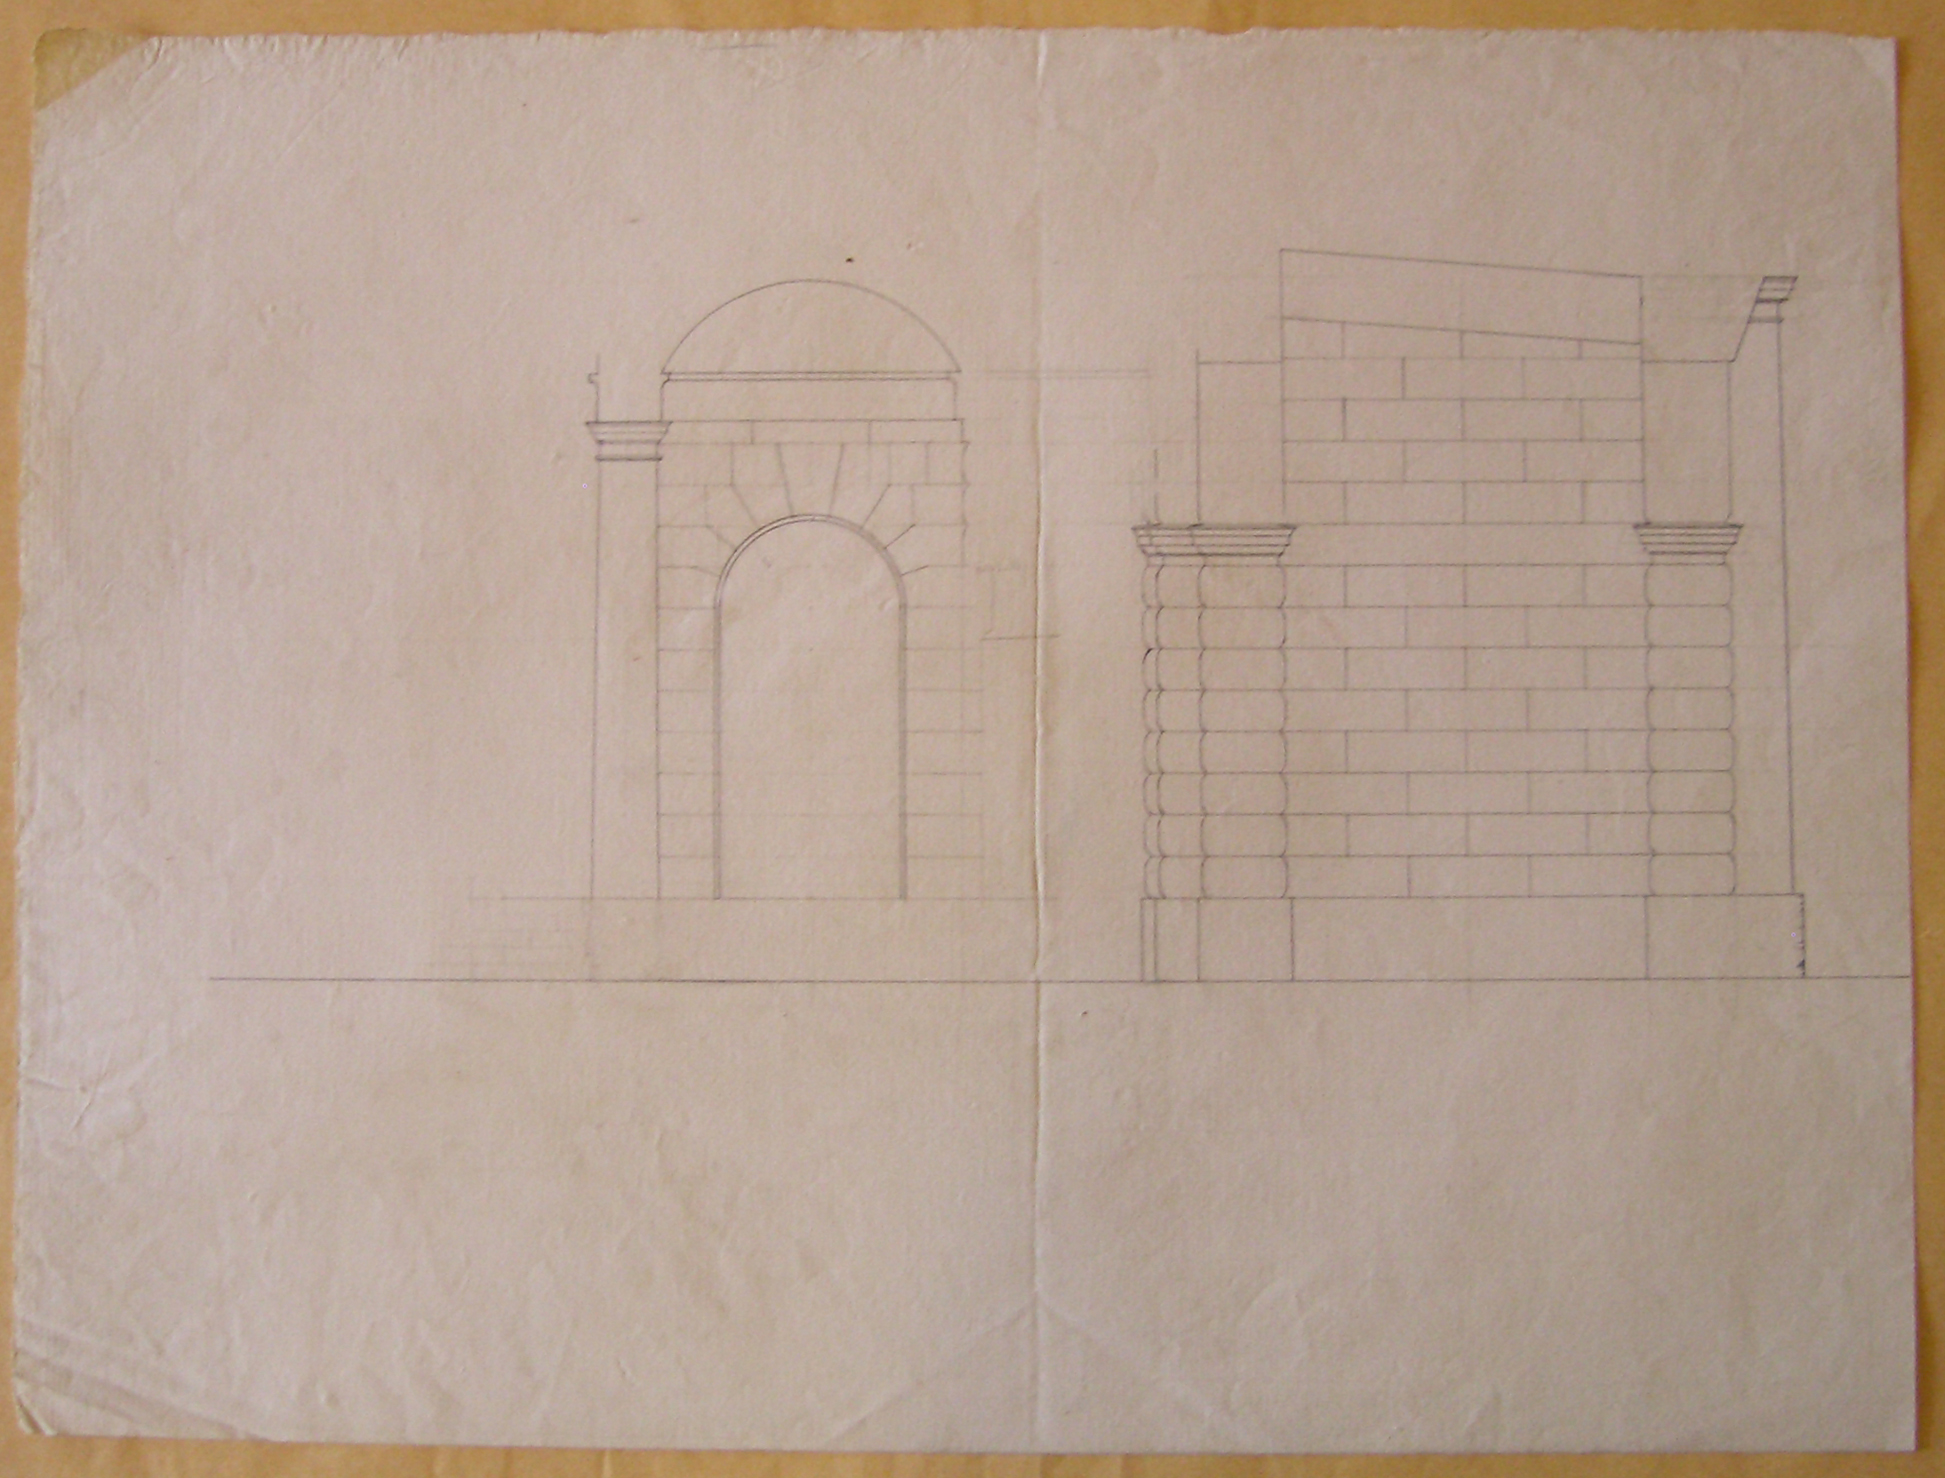 Progetto per il Burgthor (vienna): sezione trasversale (disegno architettonico, opera isolata) di Cagnola Luigi (attribuito) (sec. XIX)